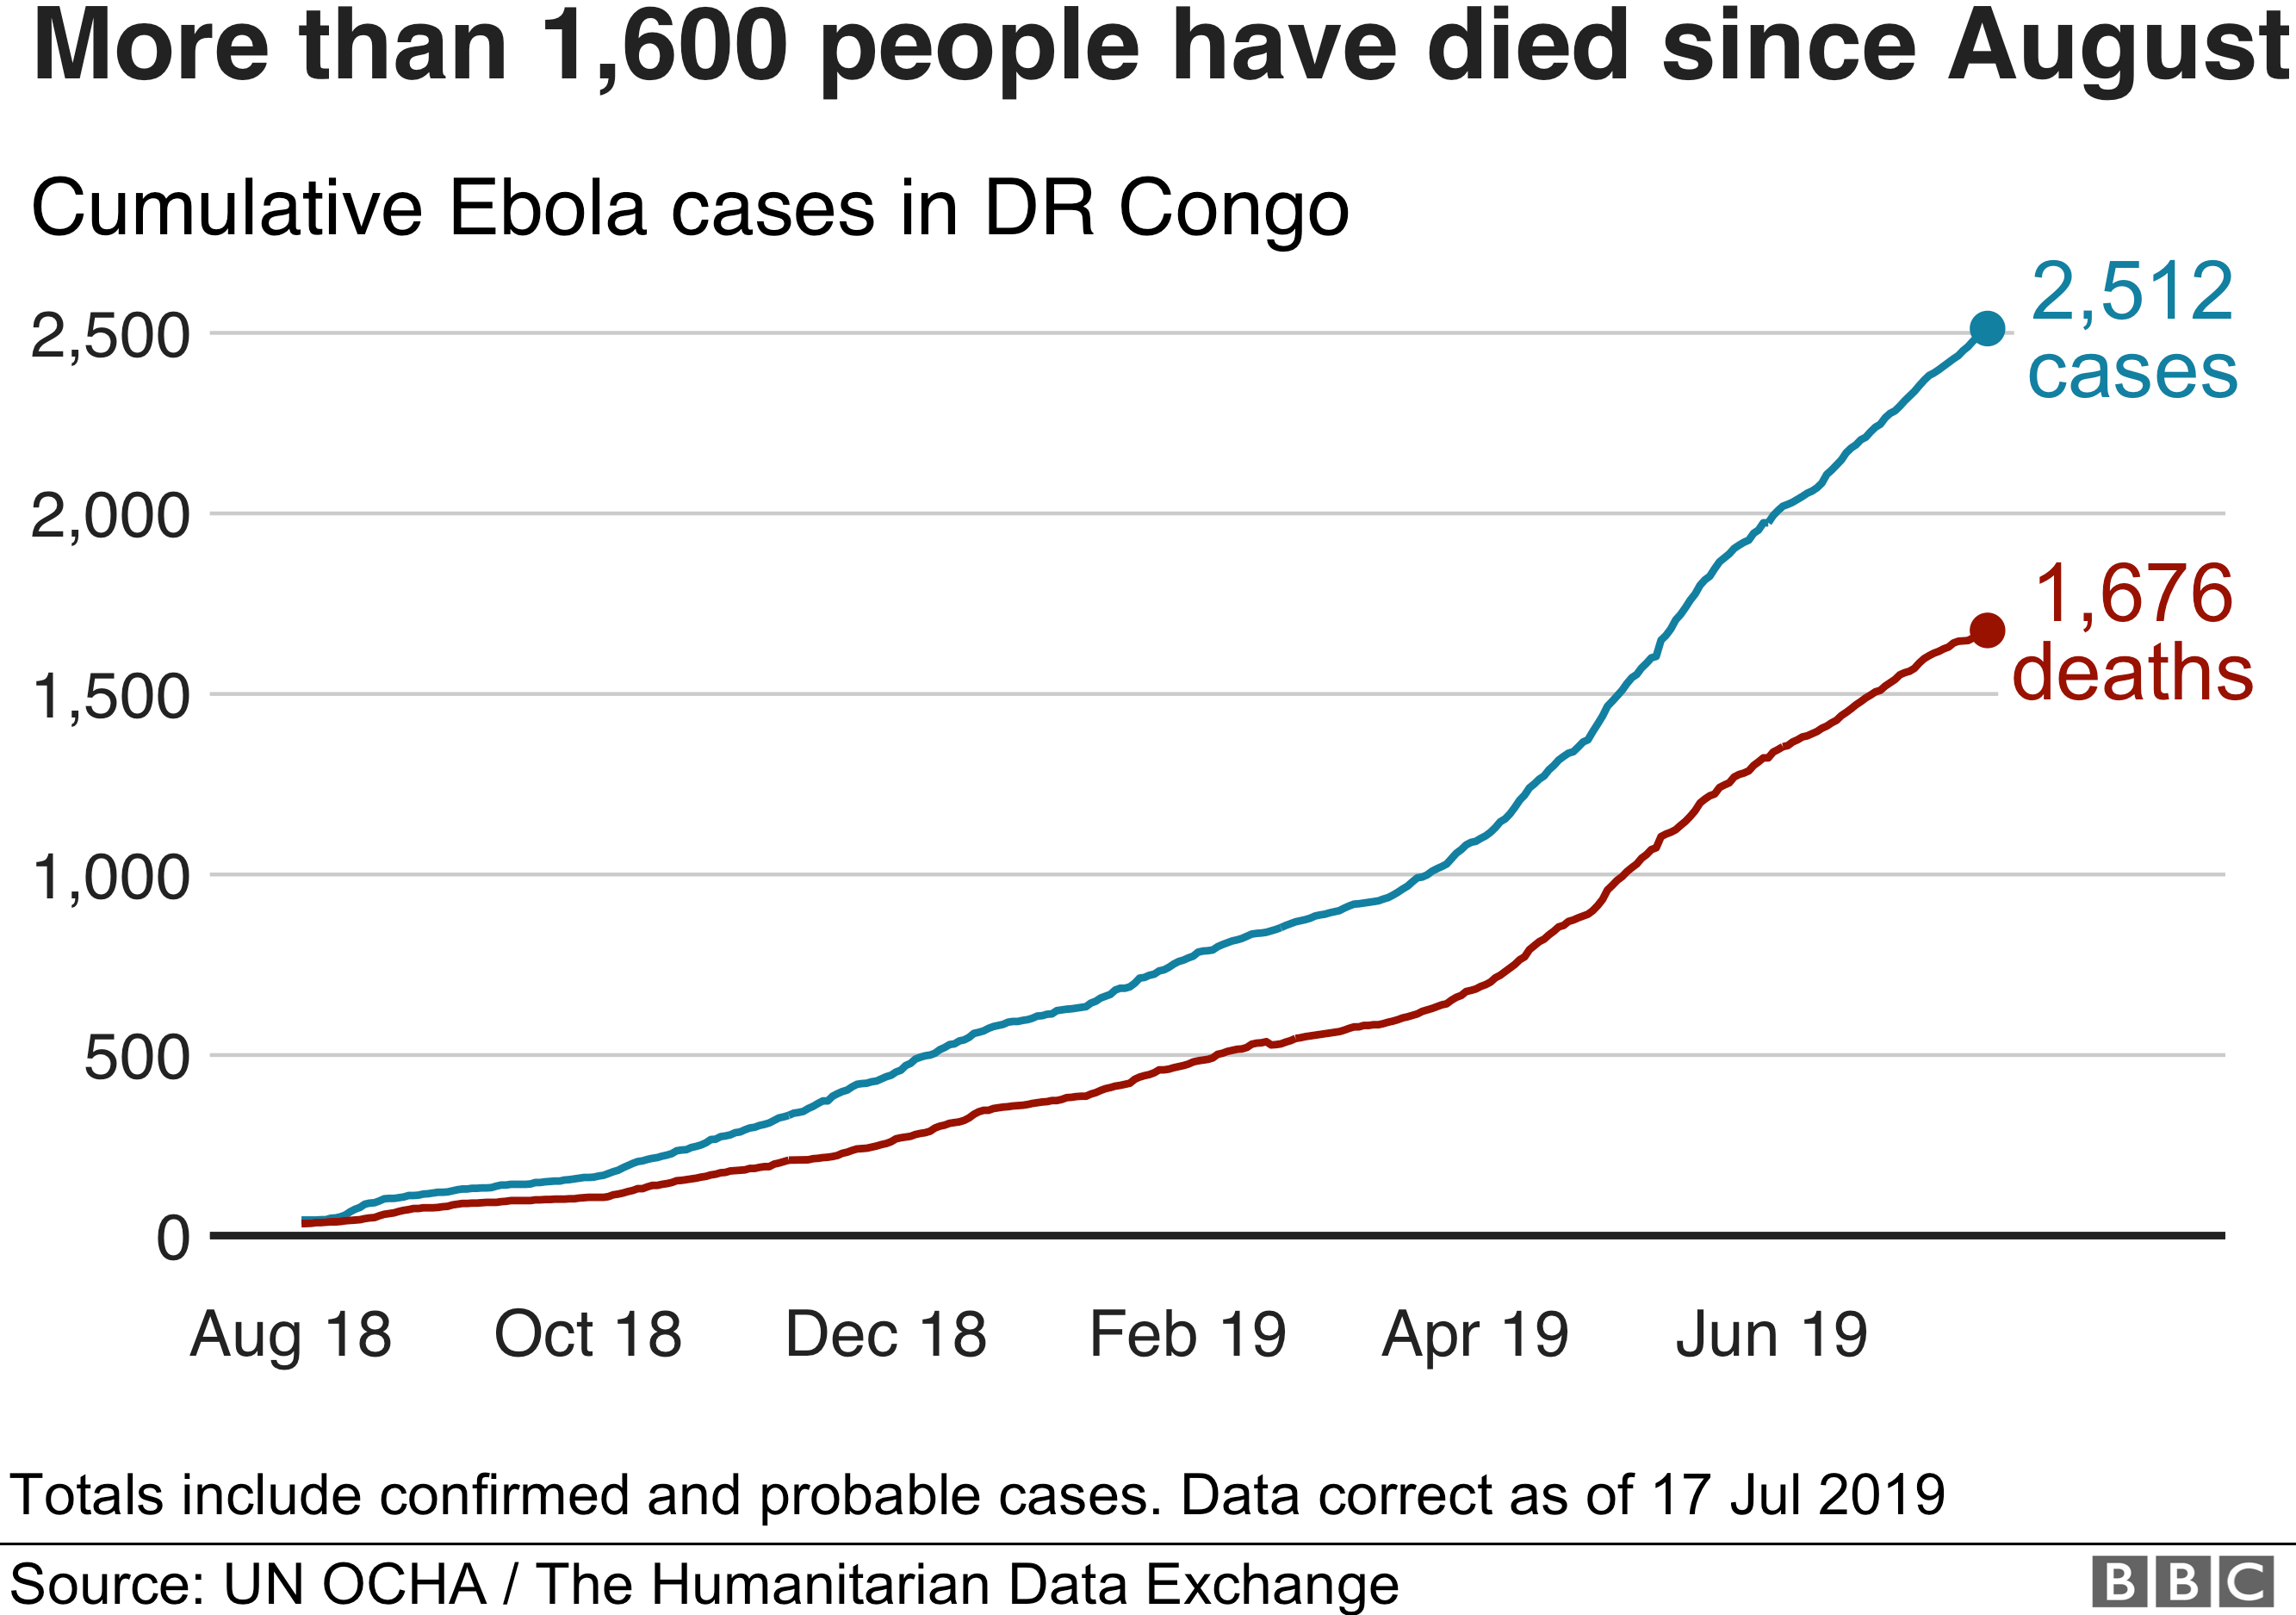 Ebola Chart